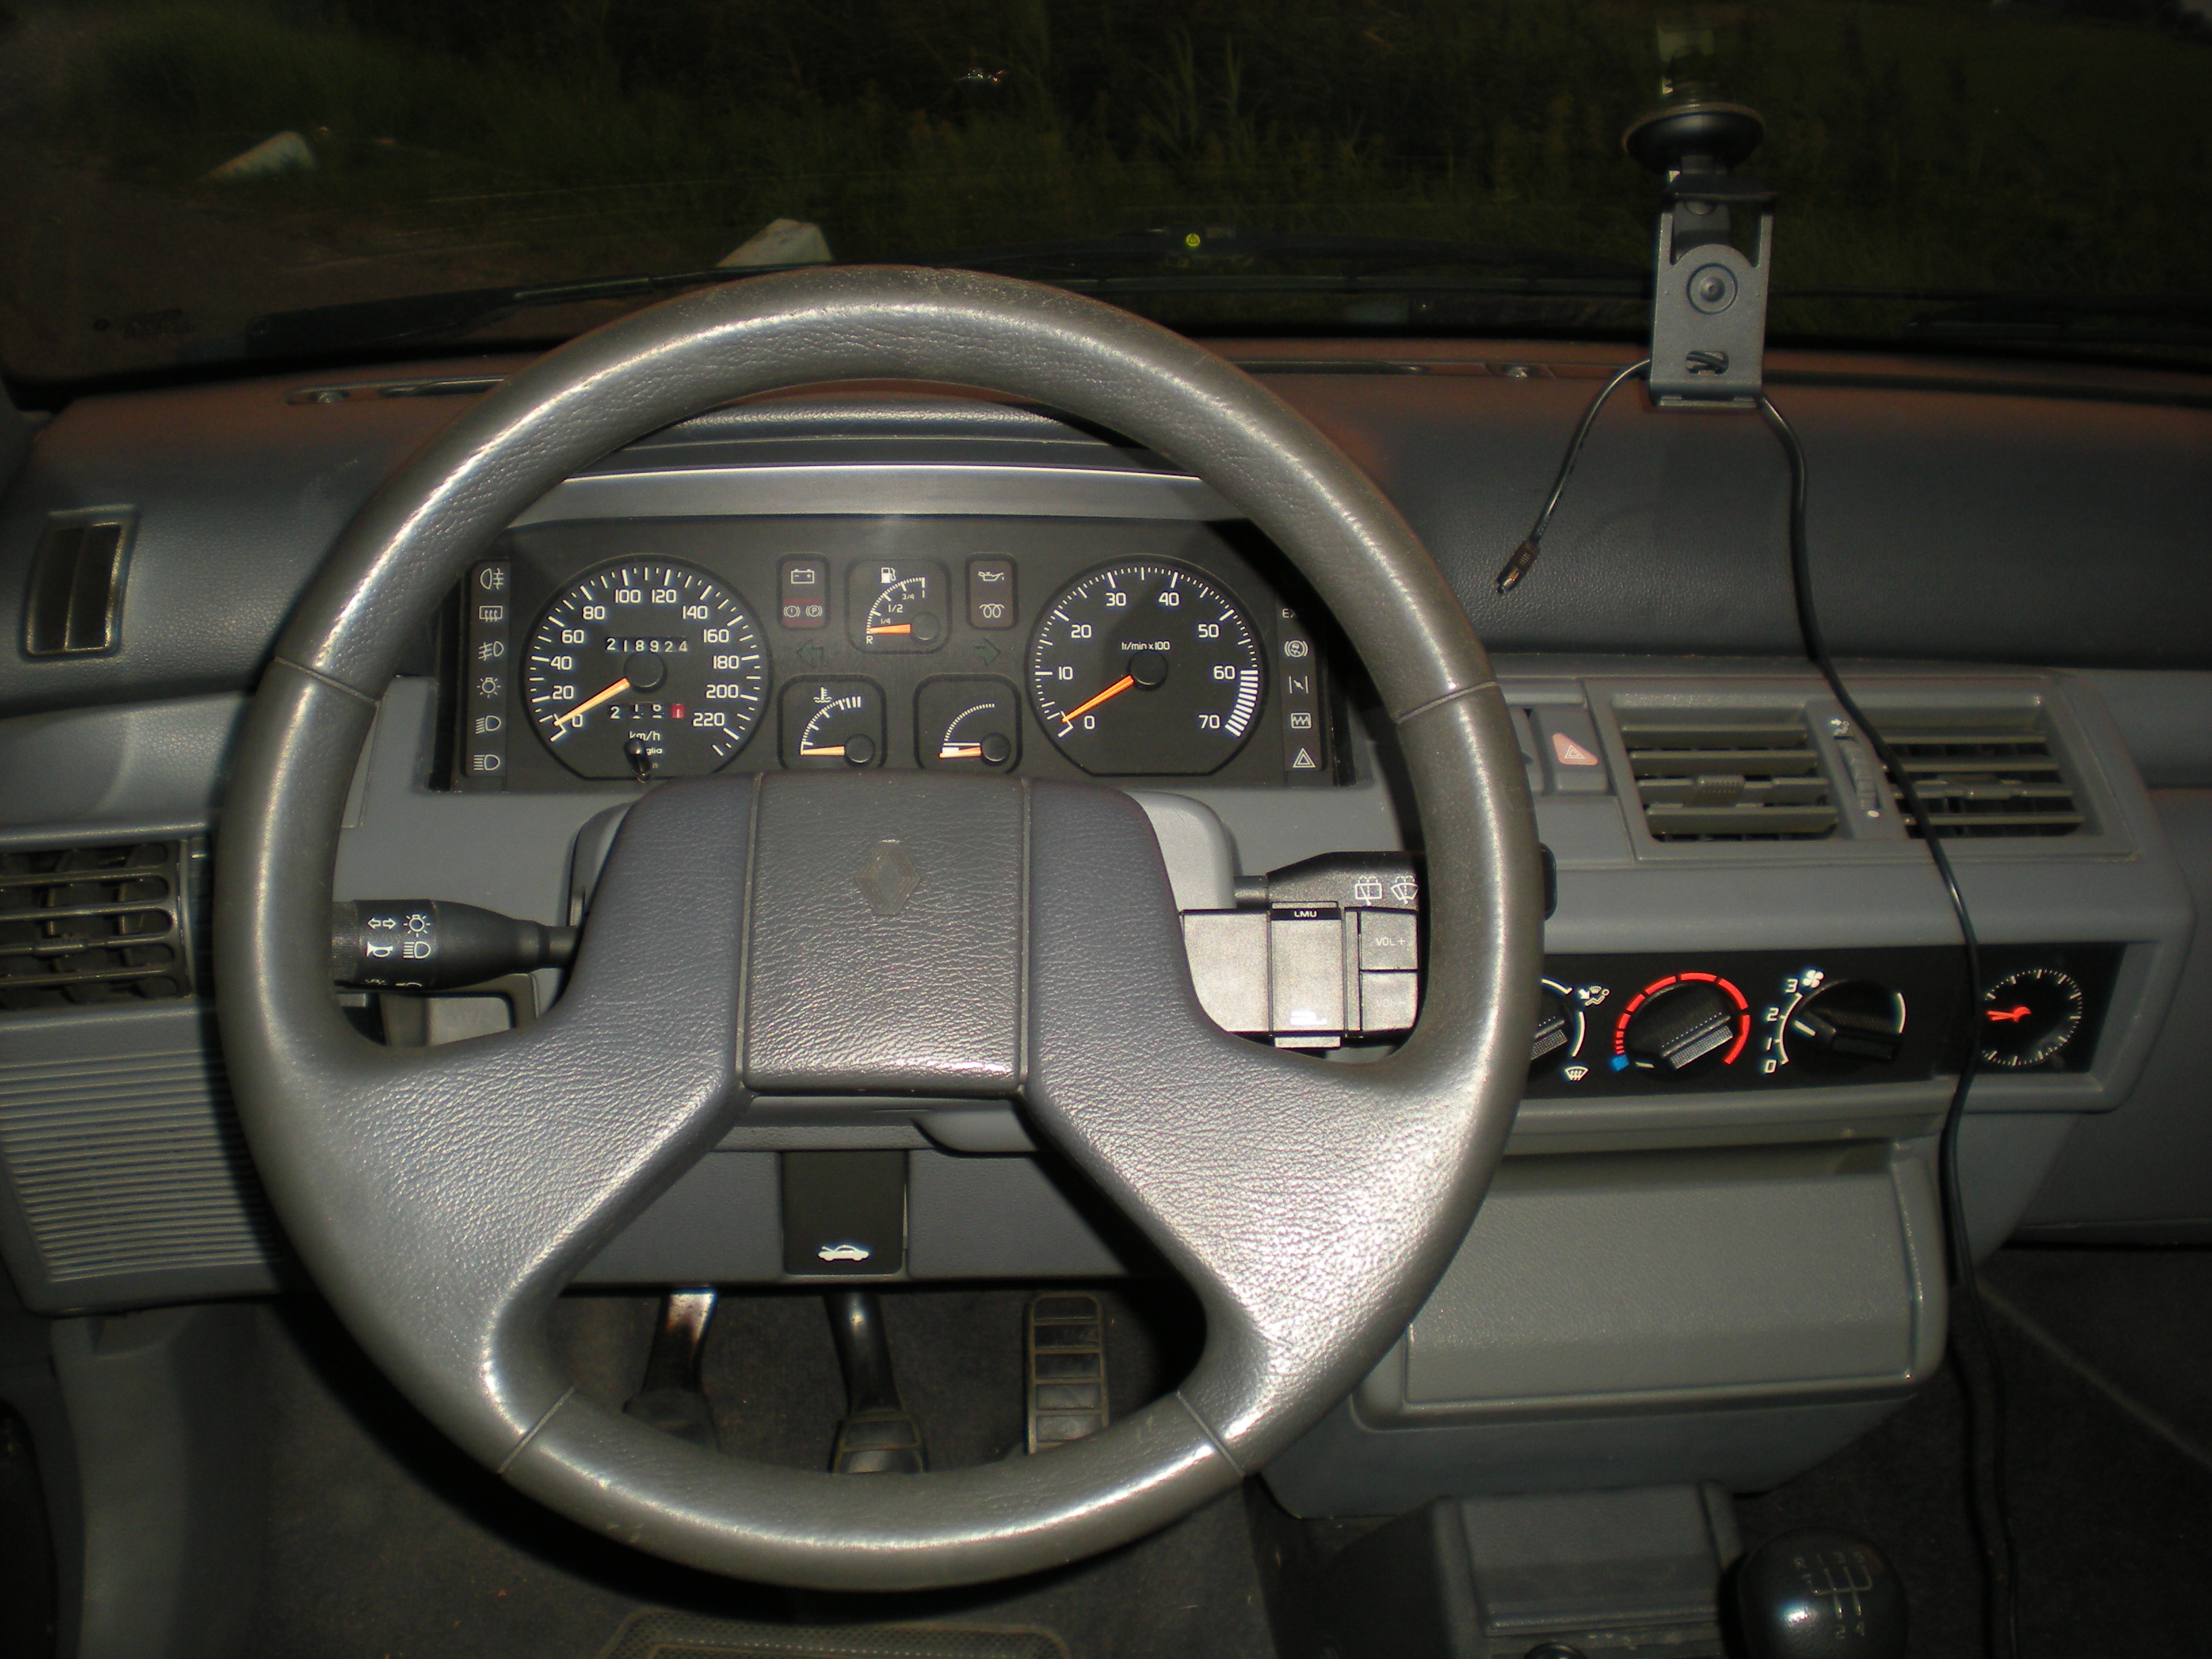 Fichier:Renault Clio RT 1.8 Dashboard.JPG — Wikipédia